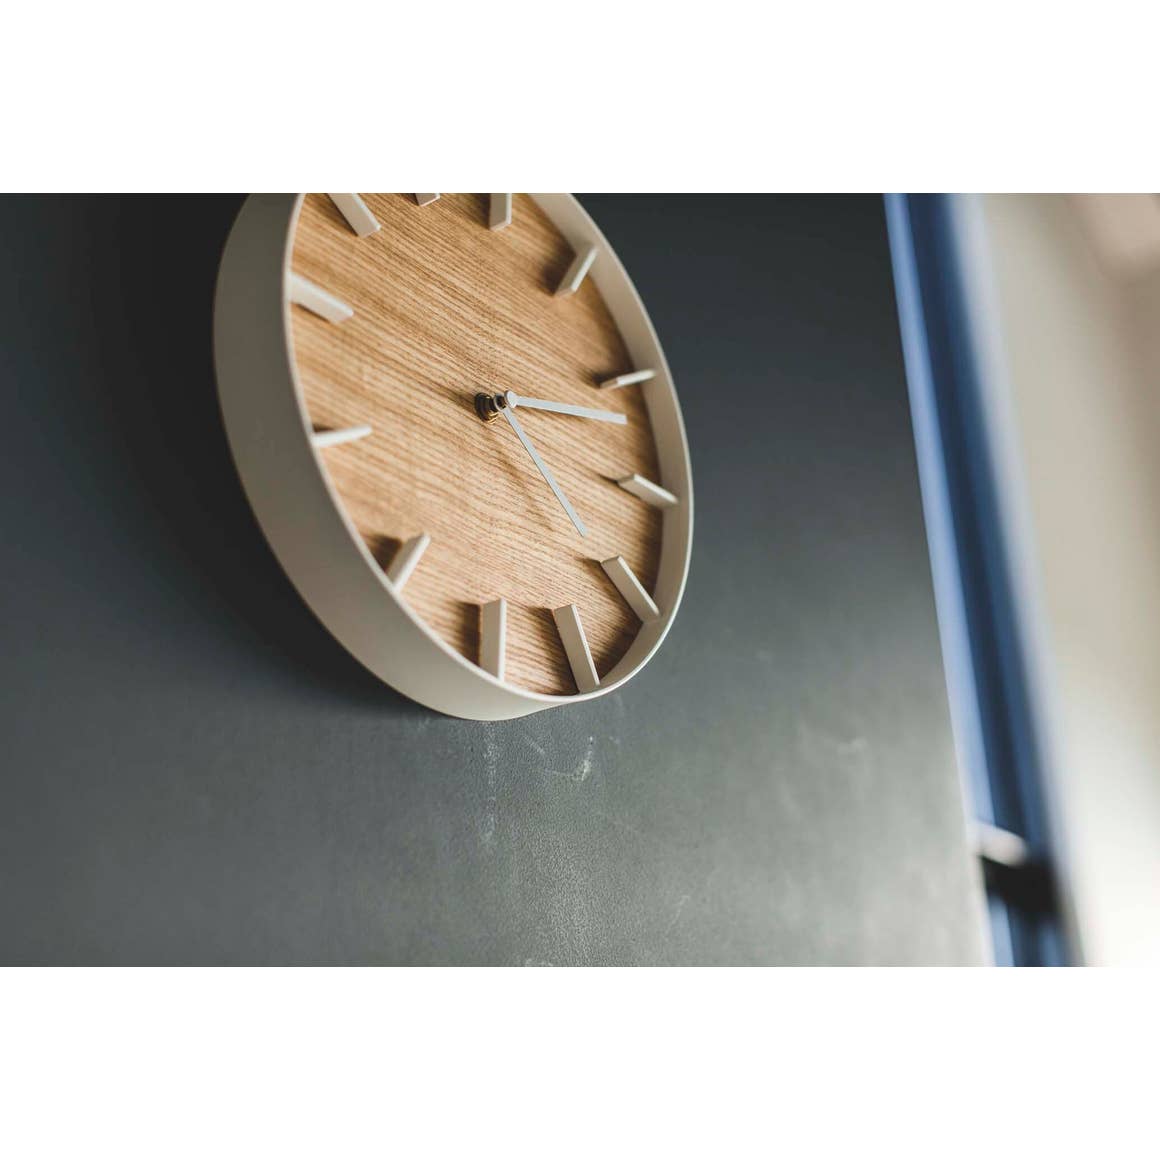 RIN Natural Wood Wall Clock